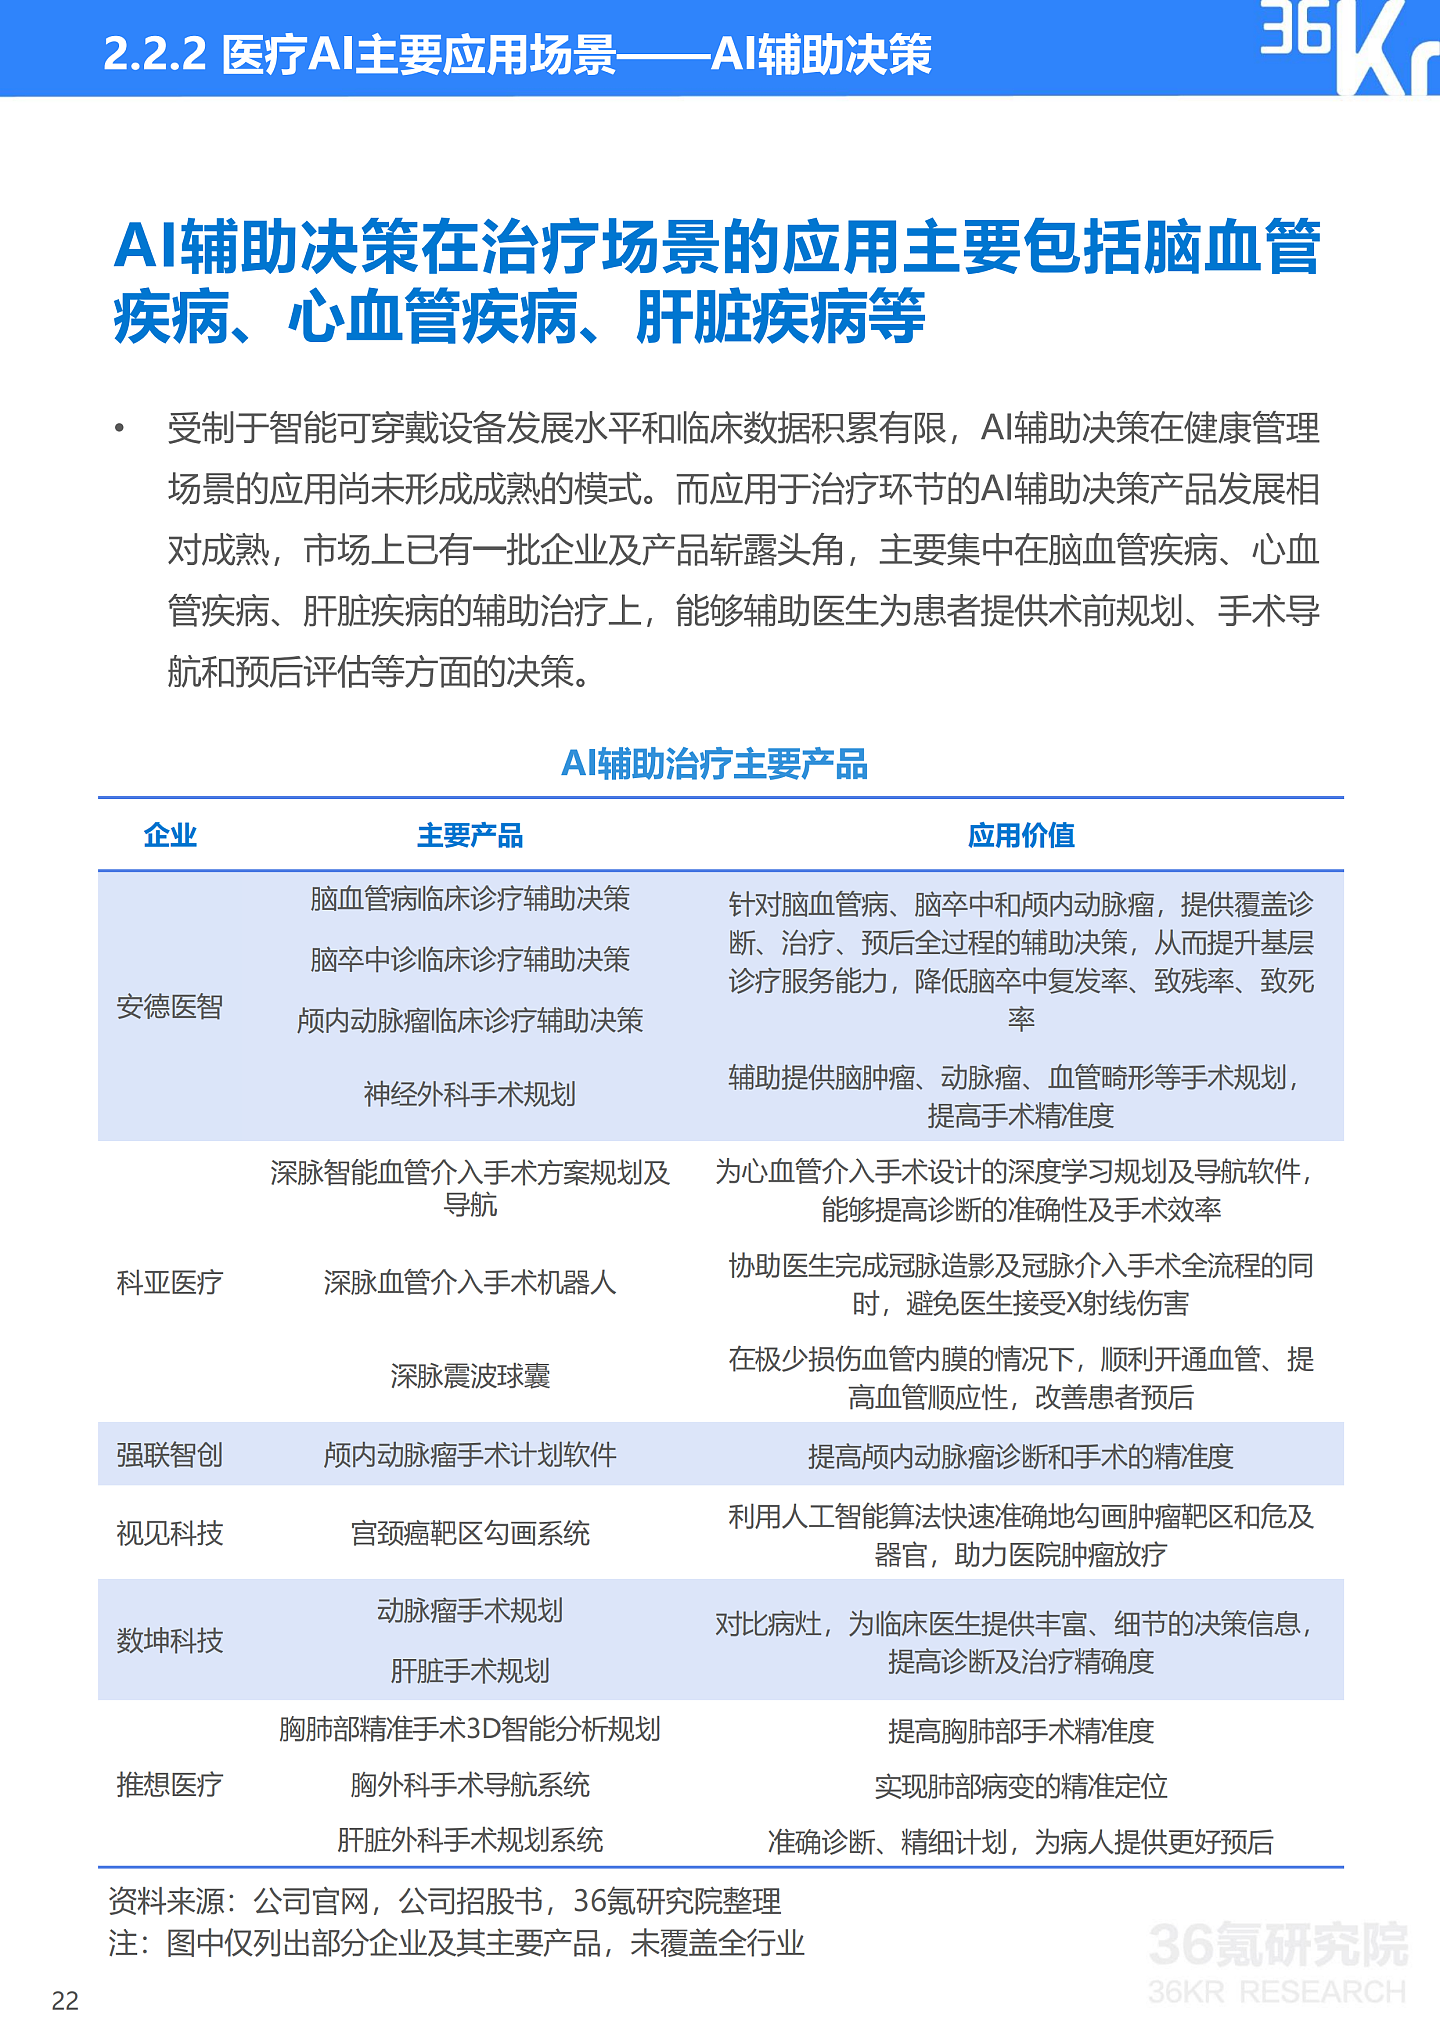 36氪研究院 | 2021年中国医疗AI行业研究报告 - 25